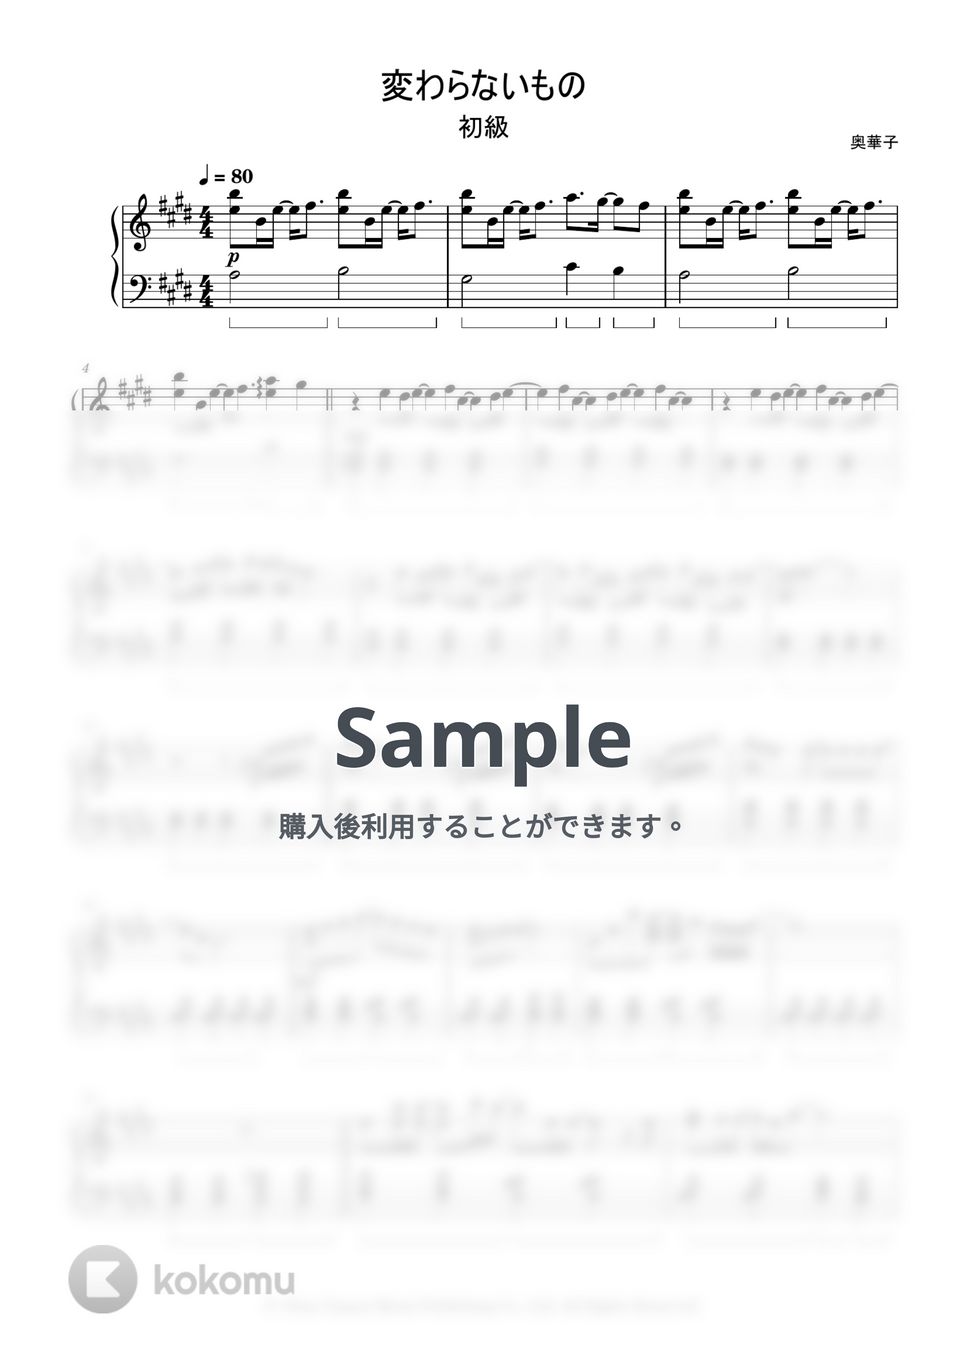 奥華子 - 変わらないもの (簡単楽譜) by ピアノ塾